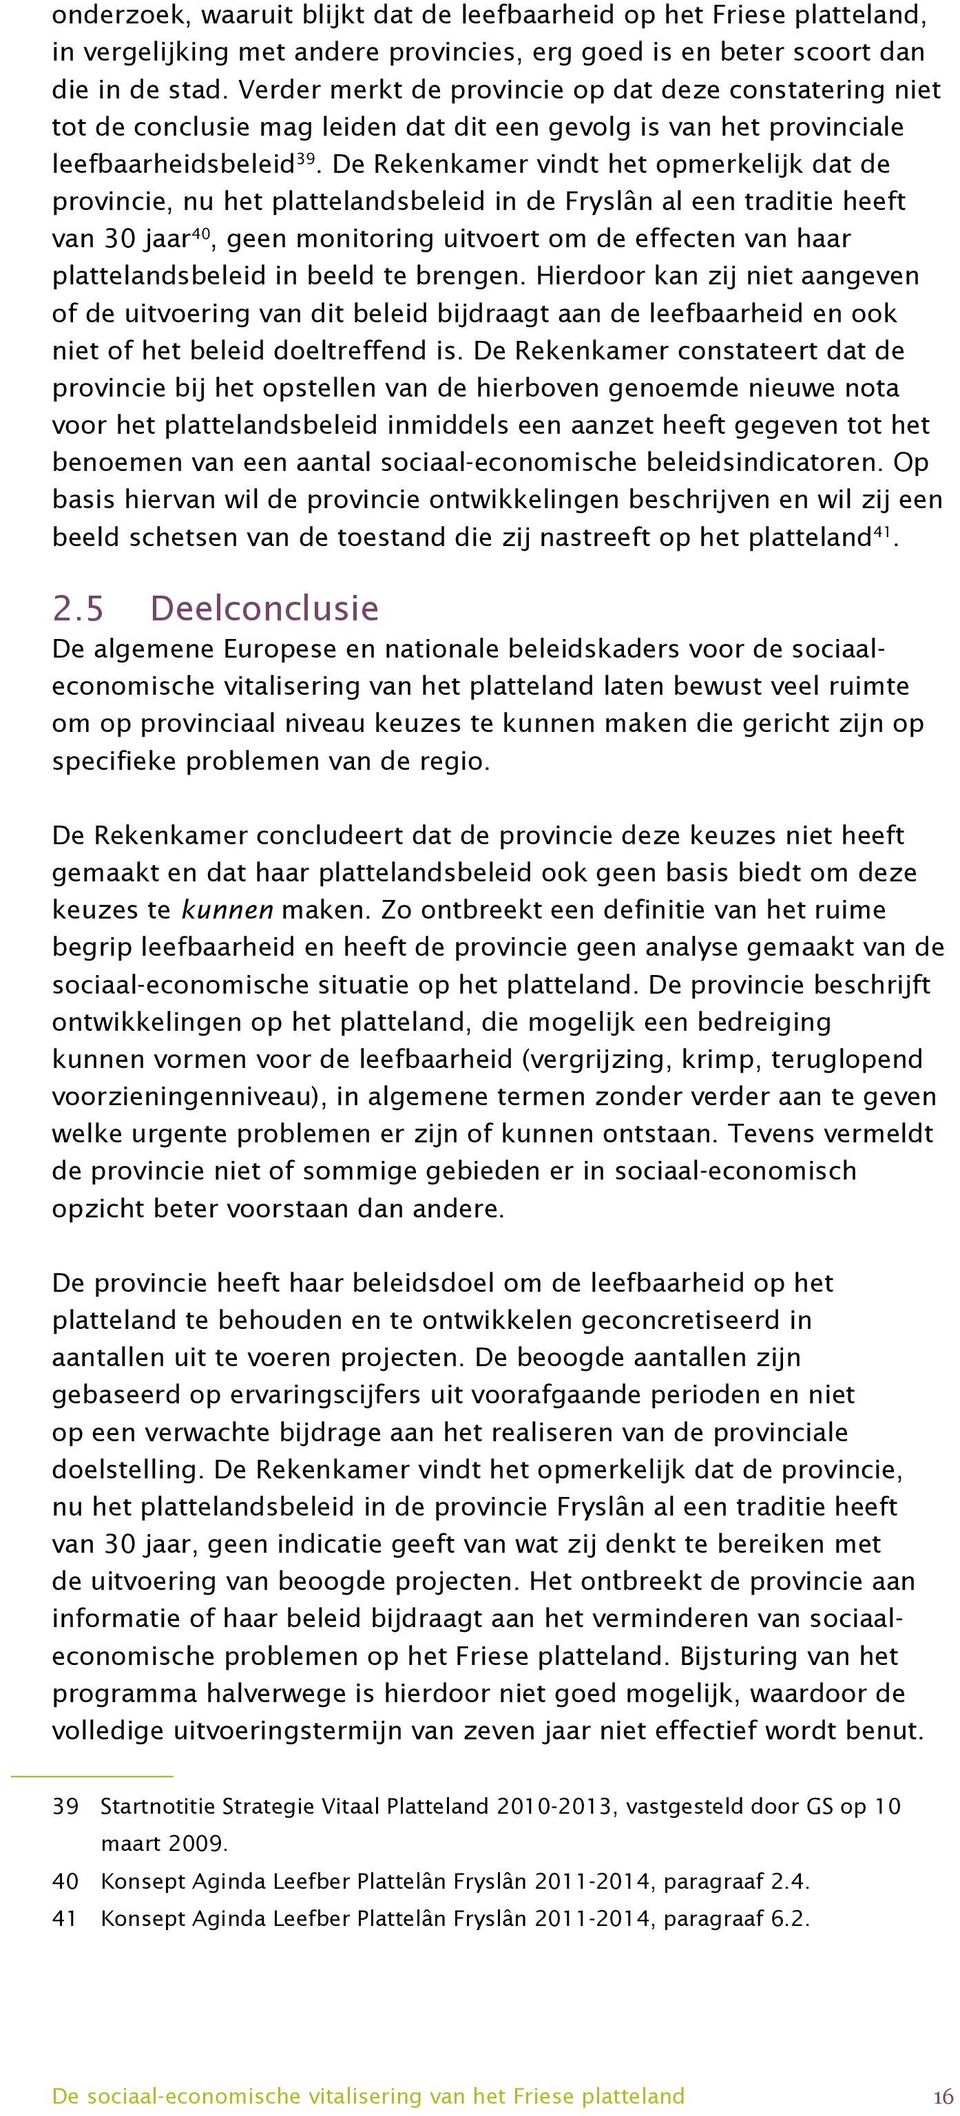 De Rekenkamer vindt het opmerkelijk dat de provincie, nu het plattelandsbeleid in de Fryslân al een traditie heeft van 30 jaar 40, geen monitoring uitvoert om de effecten van haar plattelandsbeleid